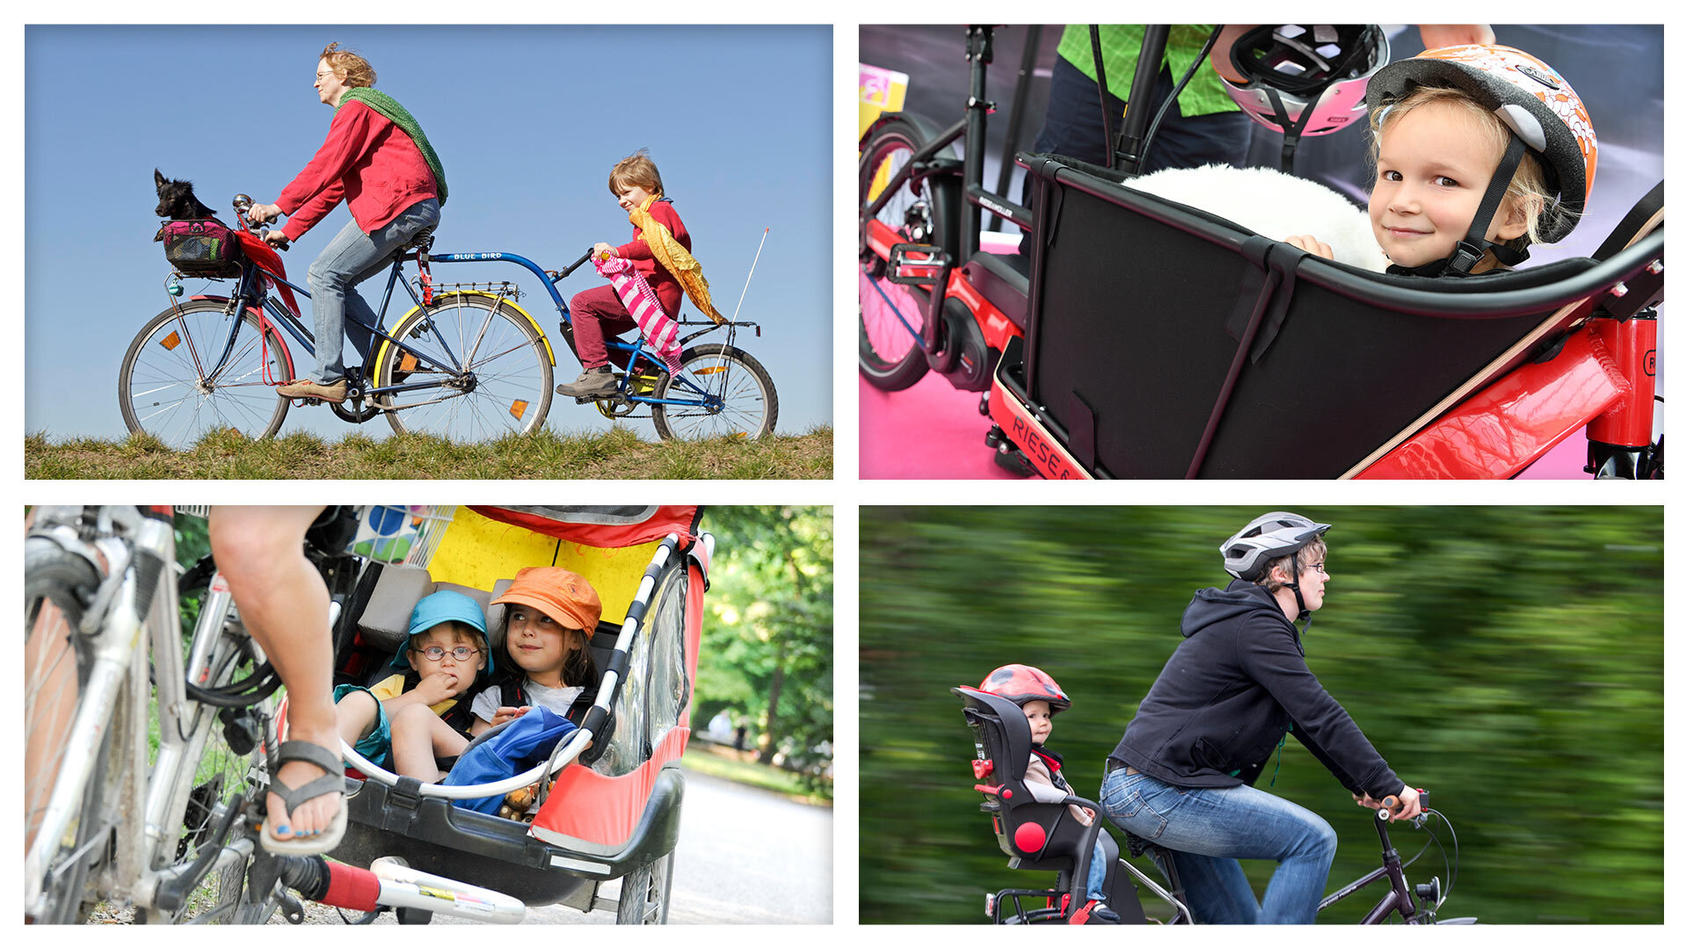 Kindersitz, Fahrradanhänger, Lastenfahrrad oder Nachläufer? Das passende Fahrradtransportsystem für das eigene Kind finden